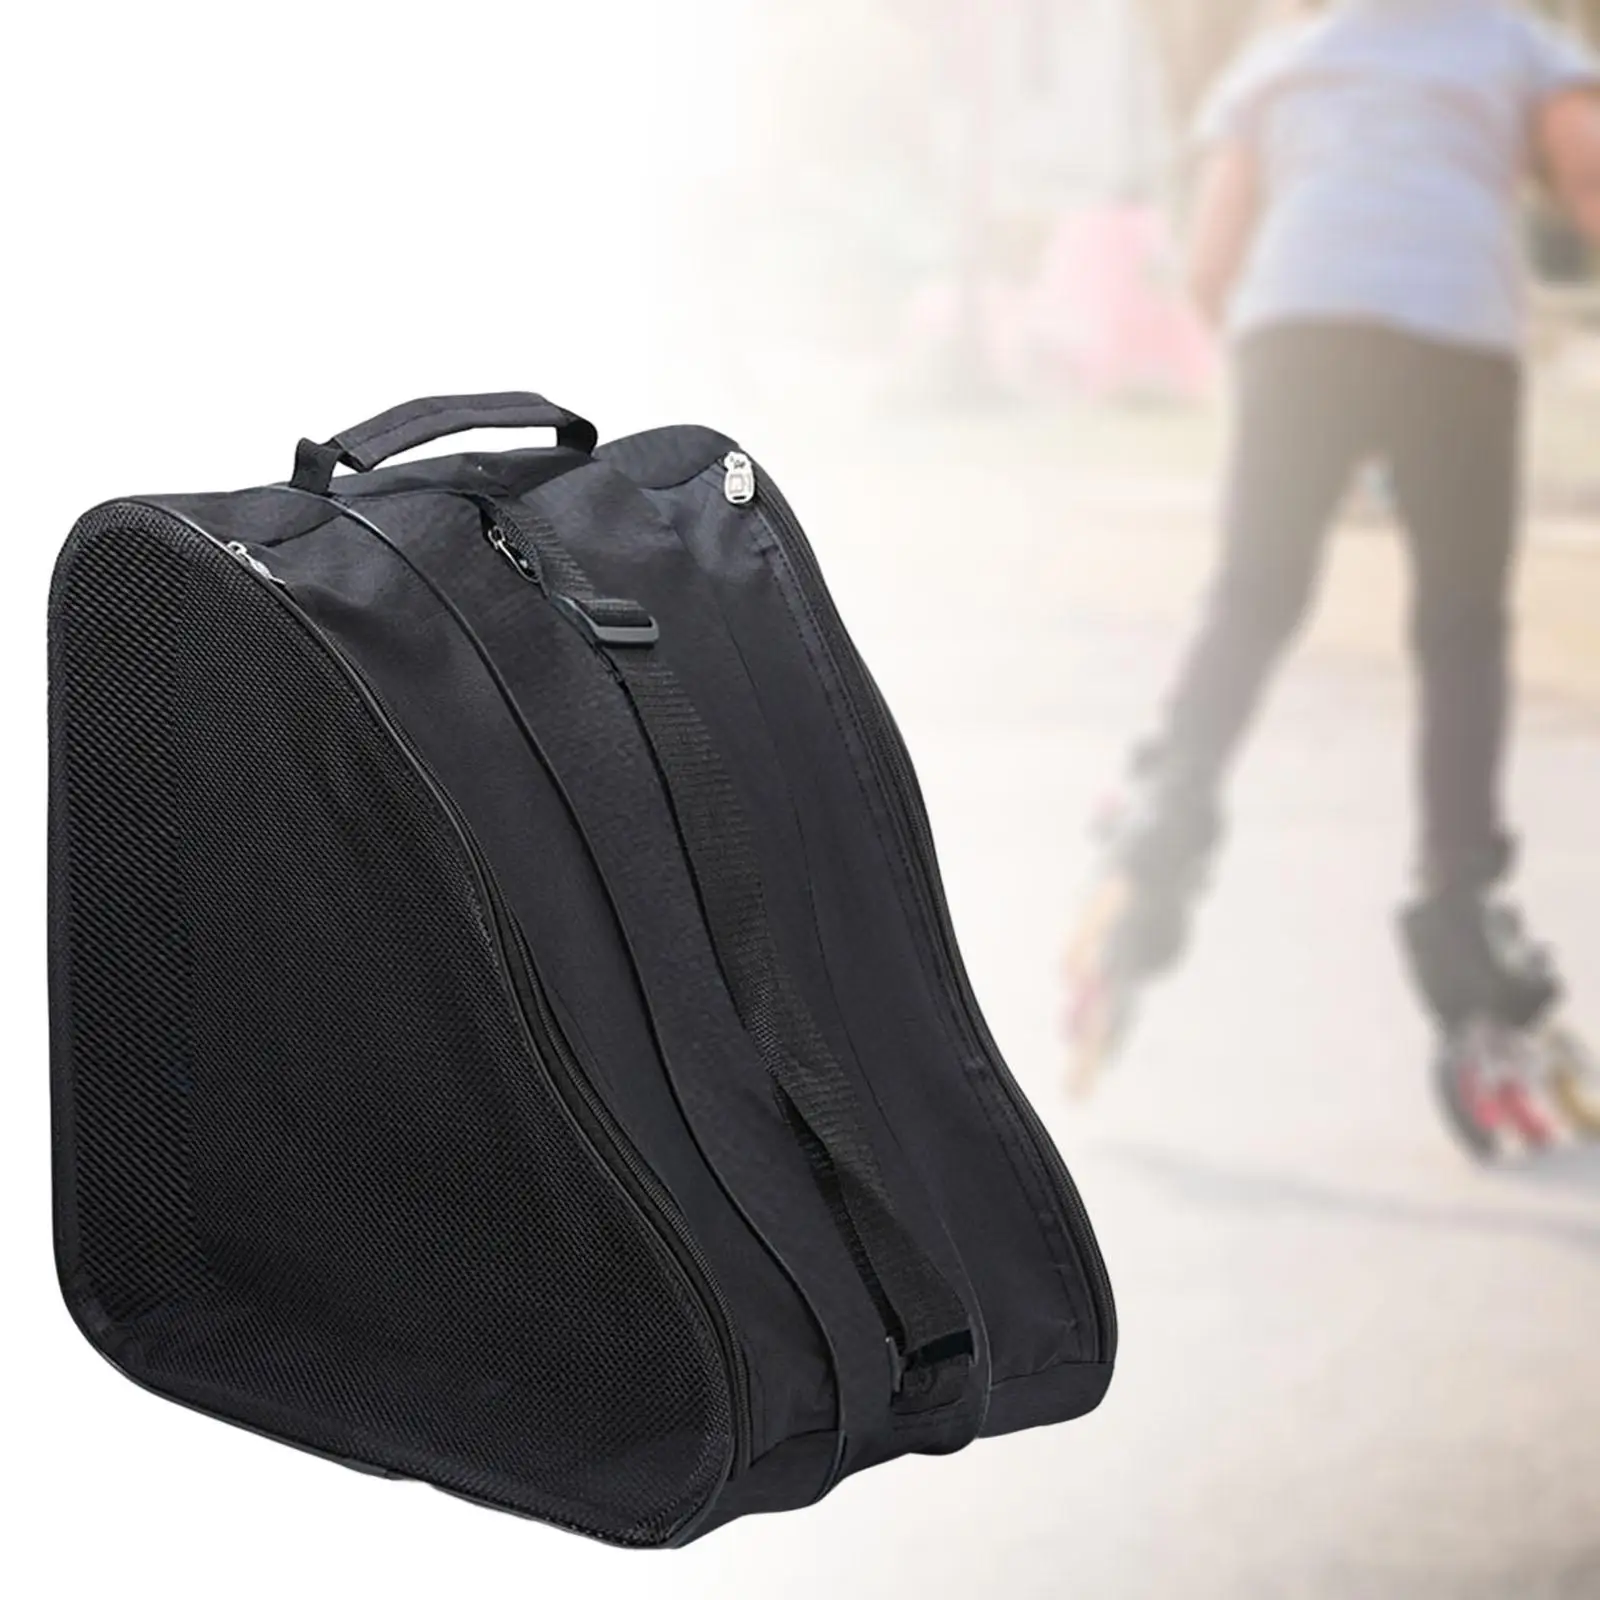 Triangle Skating Bag Shoulder Strap Adjustable Backpack Ice Skating Holder Accessories Oxford Cloth carry for Men Adult Kid